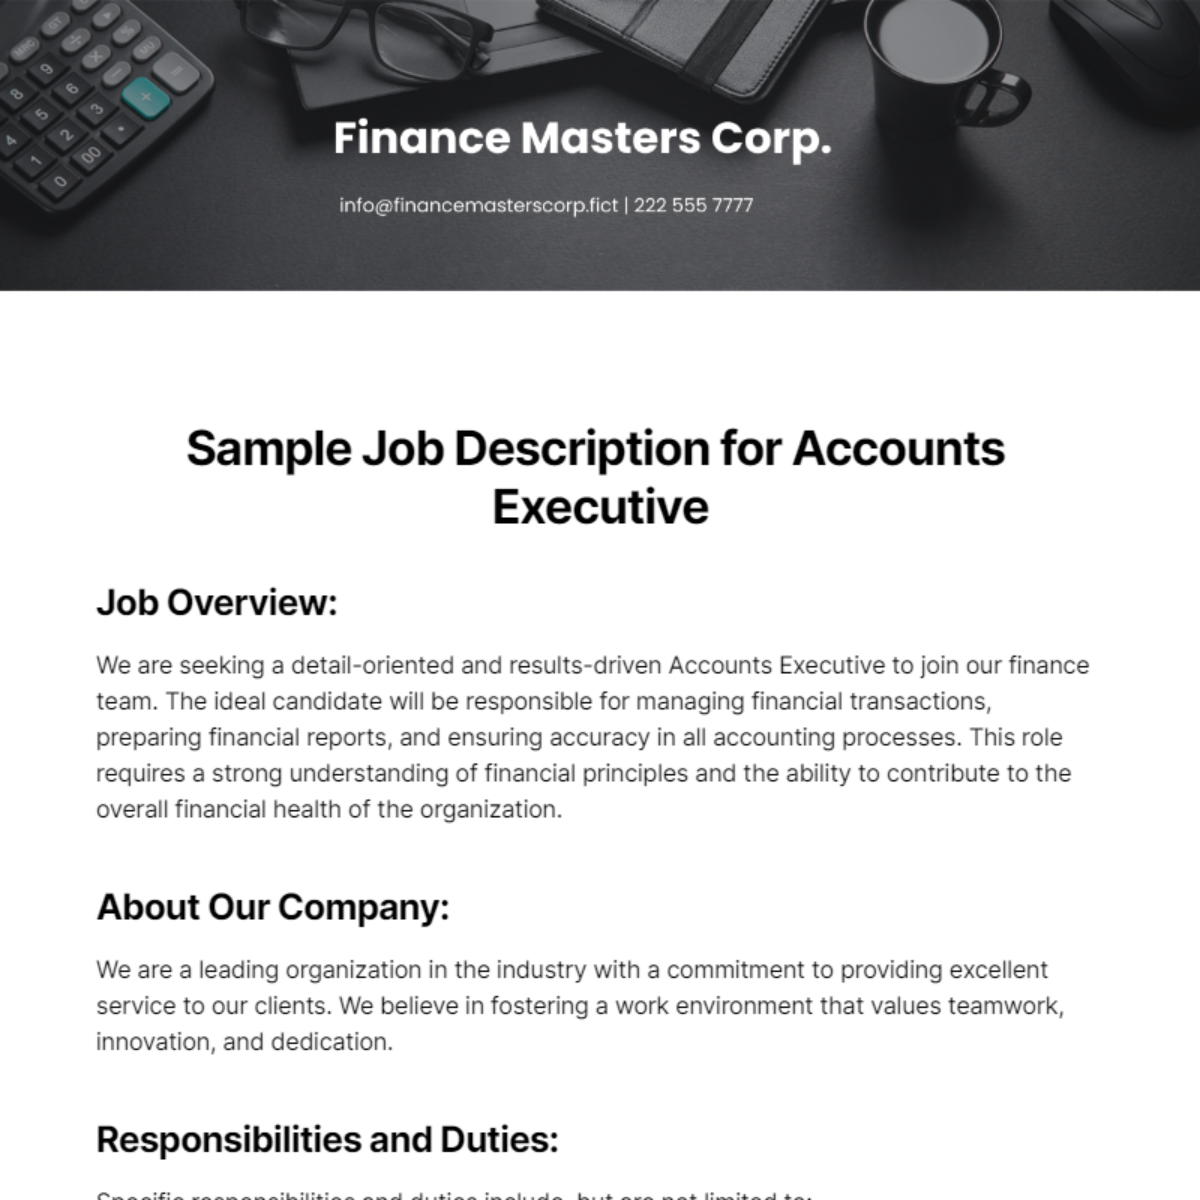 Sample Job Description for Accounts Executive Template